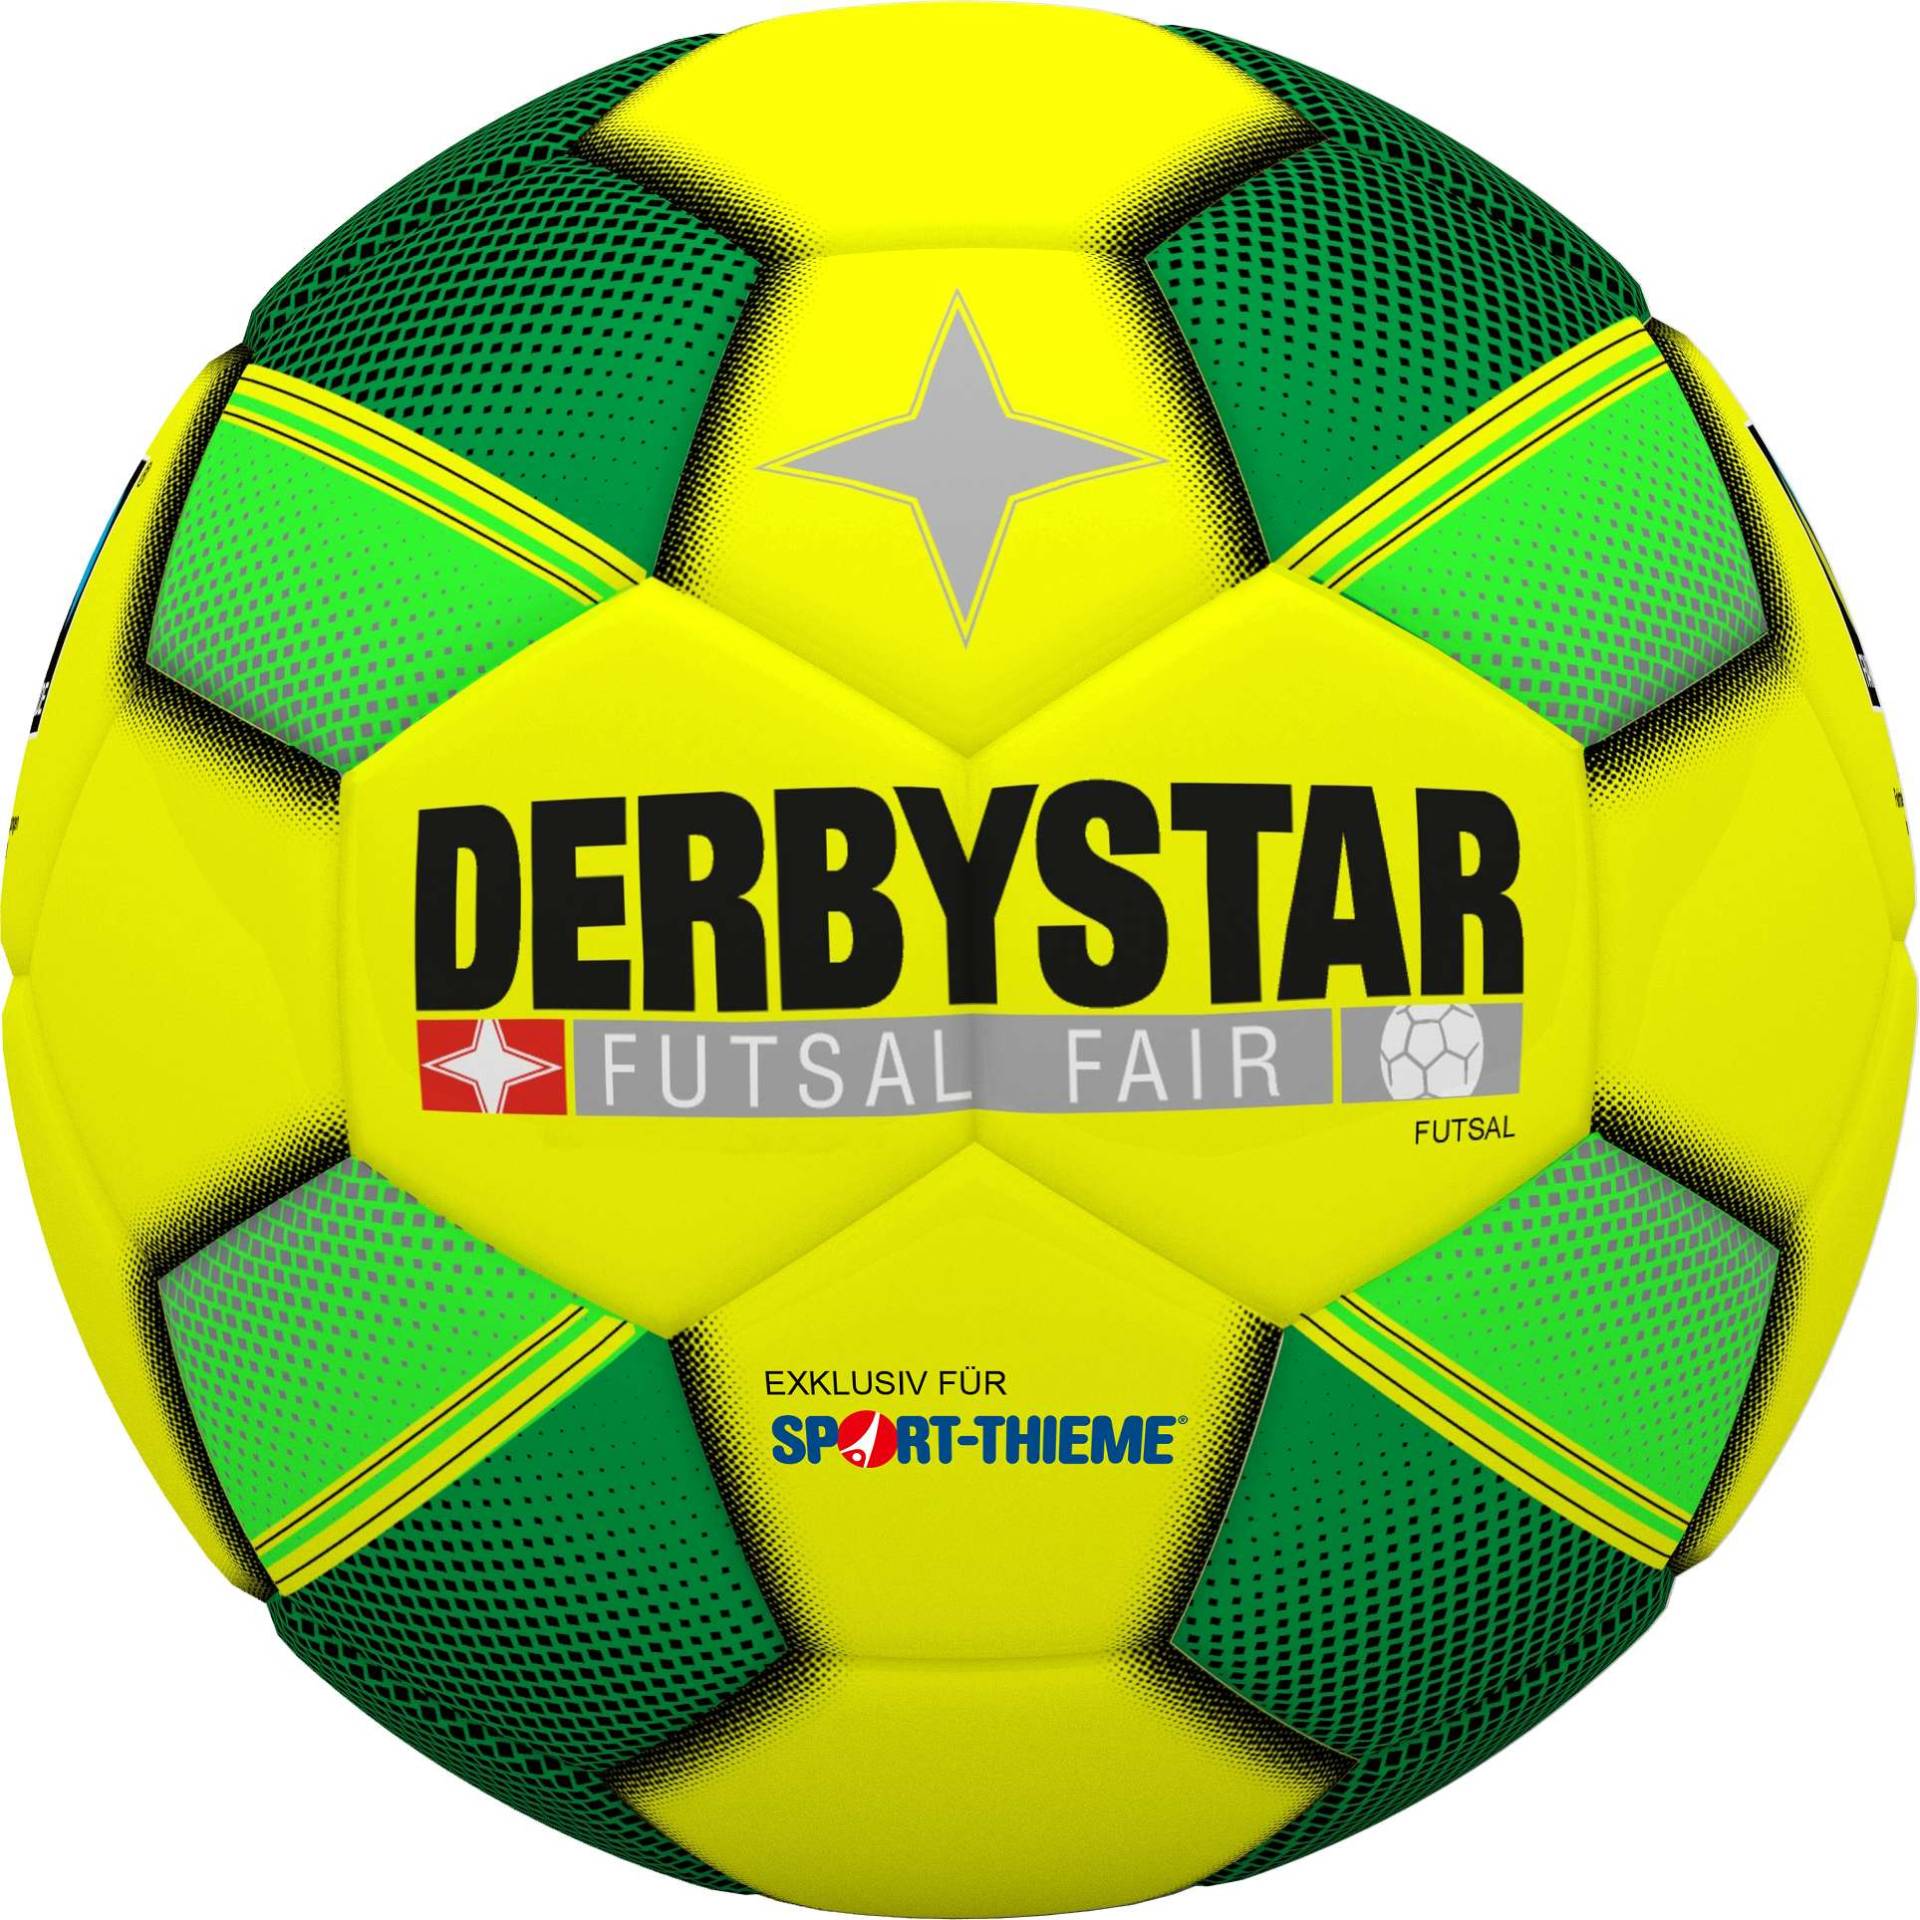 Derbystar Futsalball "Futsal Fair" von Derbystar